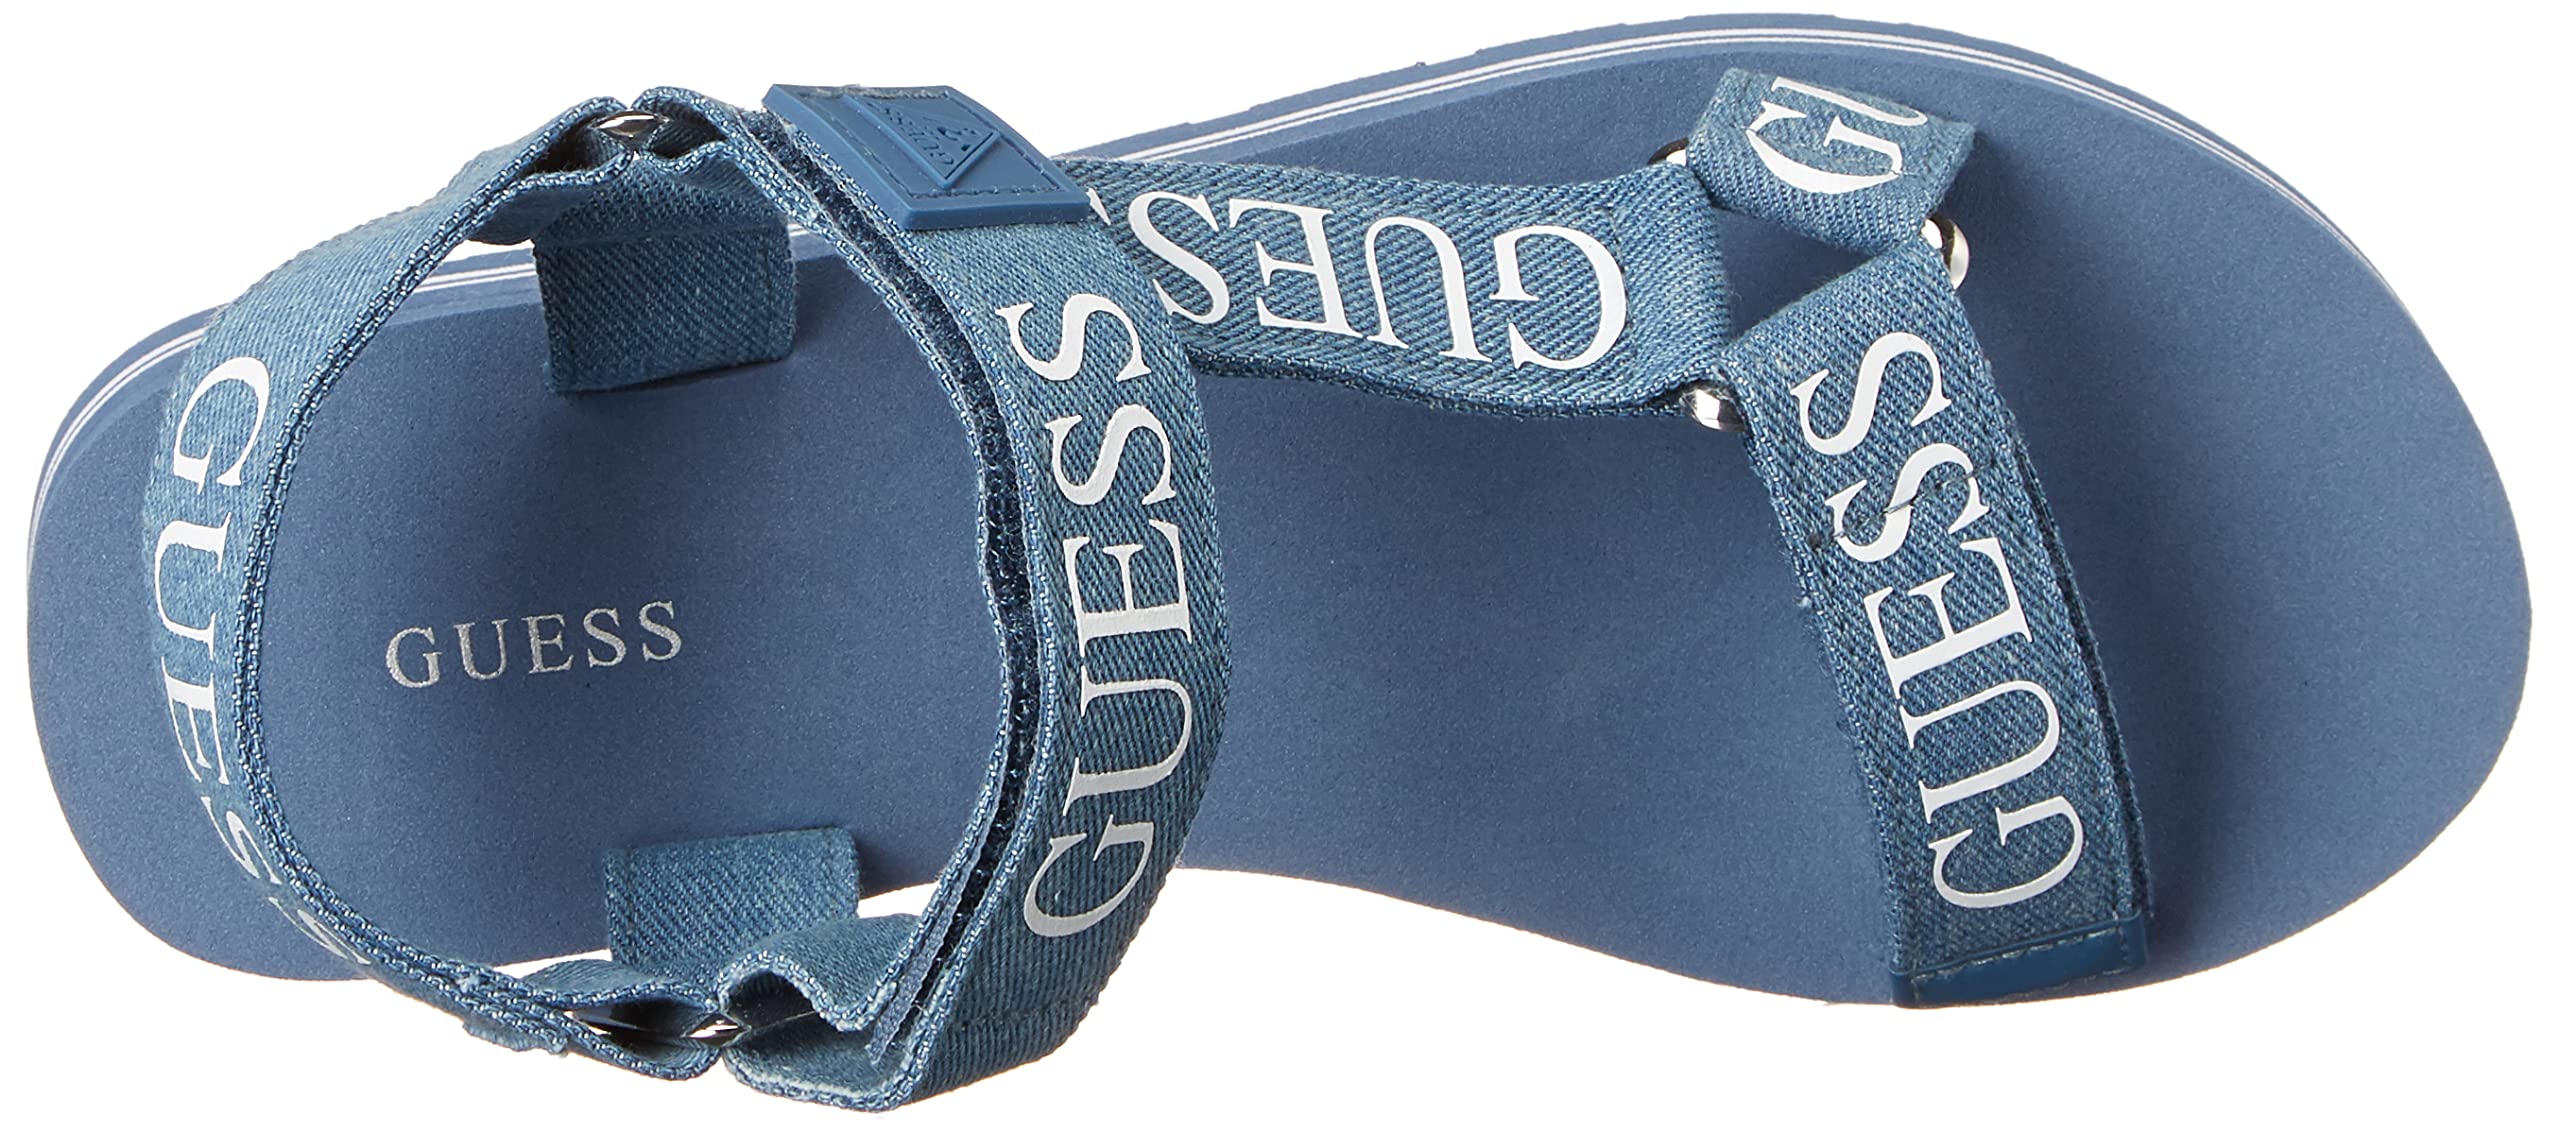 GUESS Women's AVIN Wedge Sandal, Blue+White Denim, 6